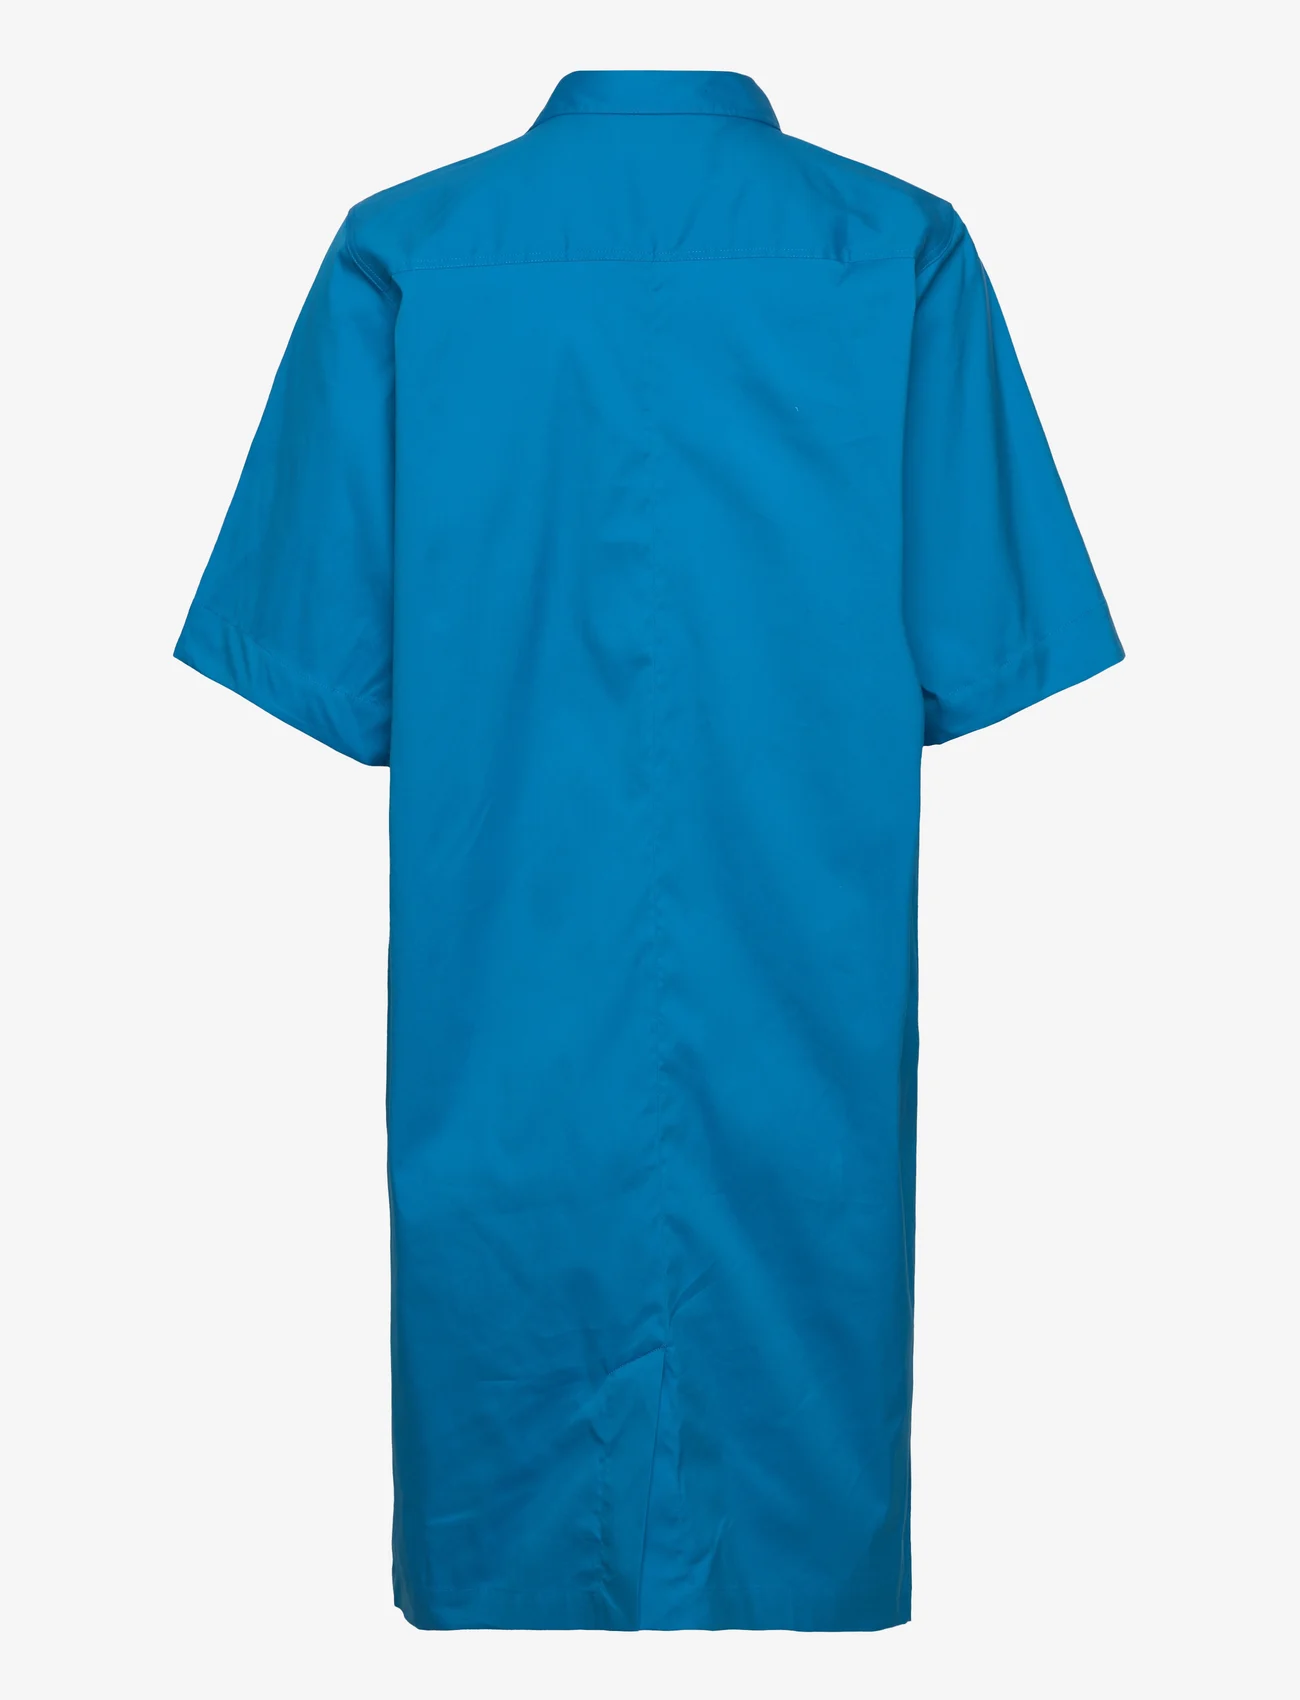 MOS MOSH - Carlee 3/4 Shirt Dress - hemdkleider - blue aster - 1